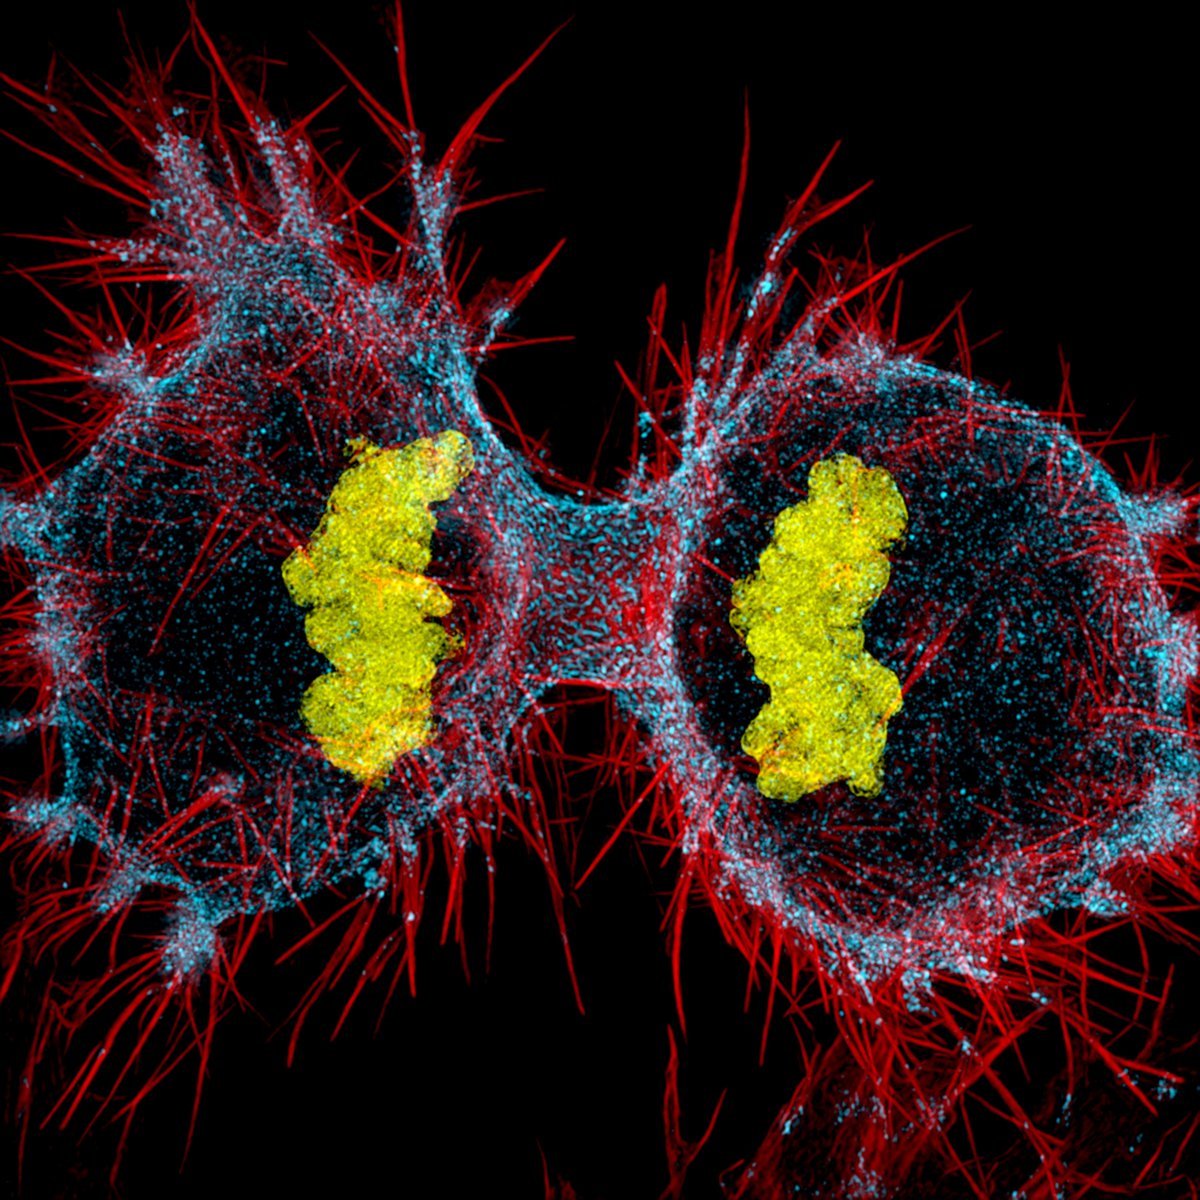 ludzka komórka hela - w trakcie podziału komórkowego